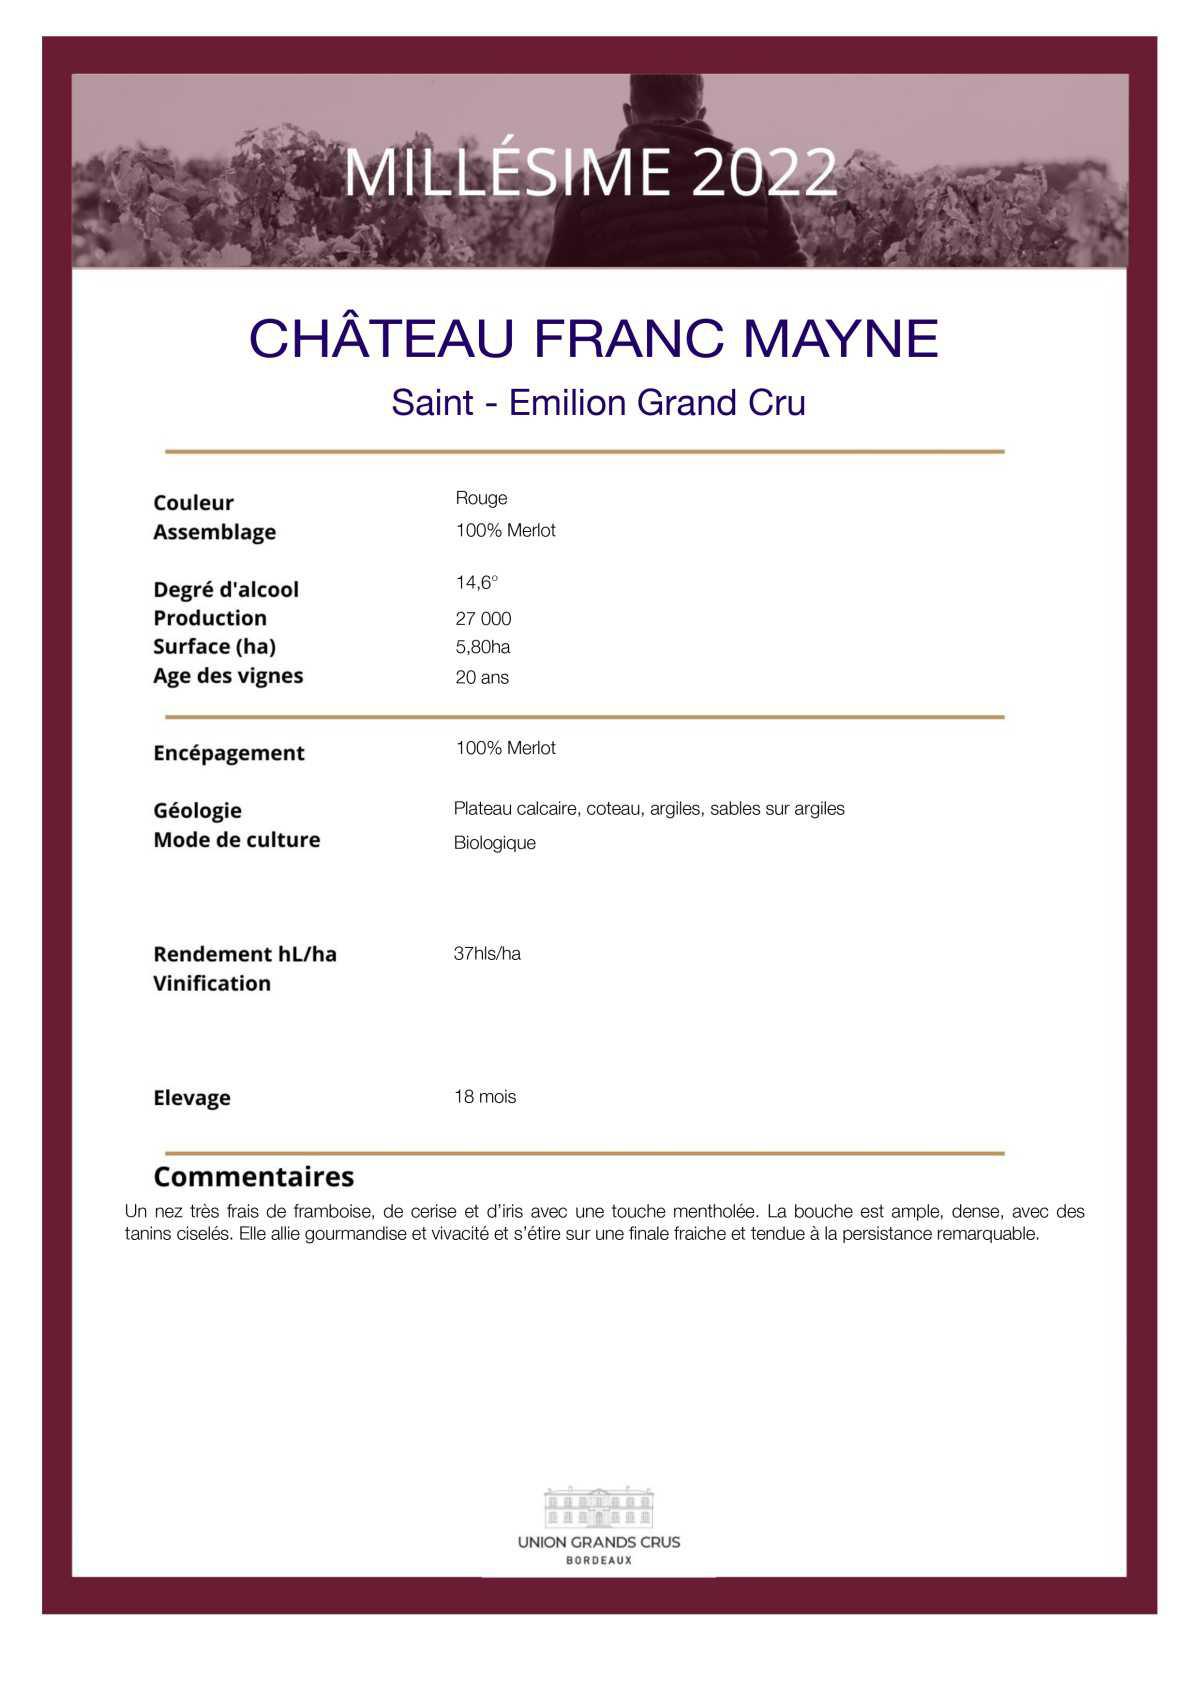  Château Franc Mayne